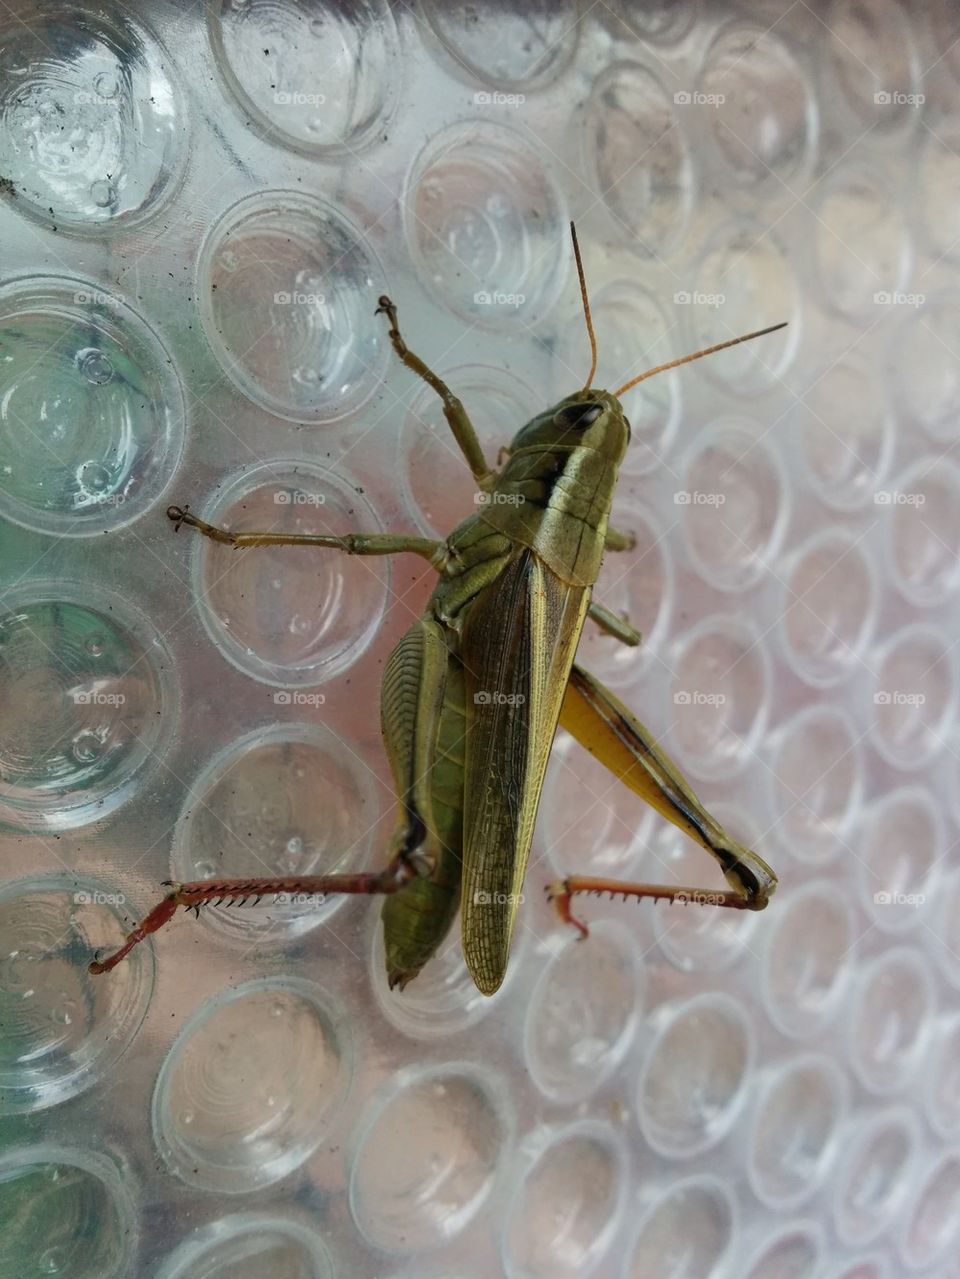 Giant grasshopper close up